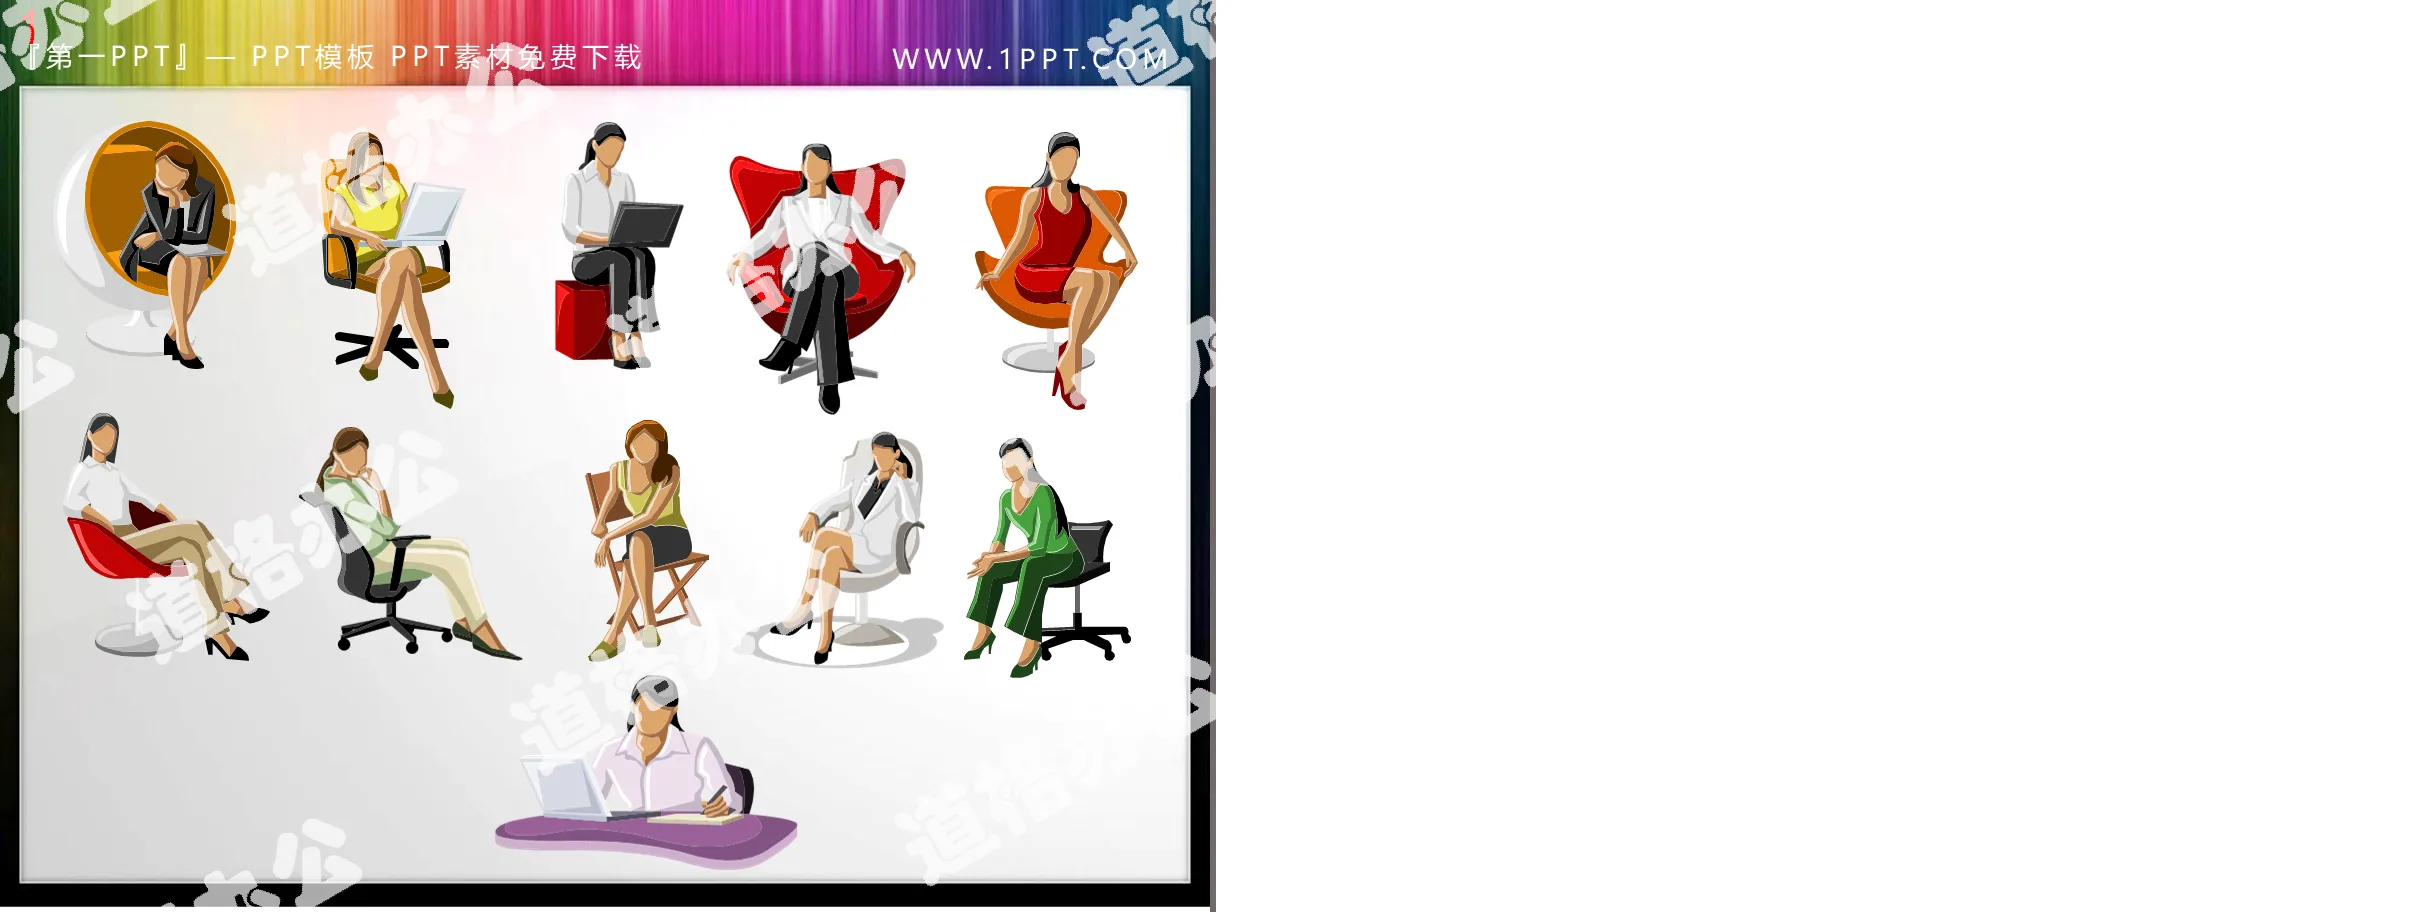 11張彩色坐姿職場女性PPT插畫素材